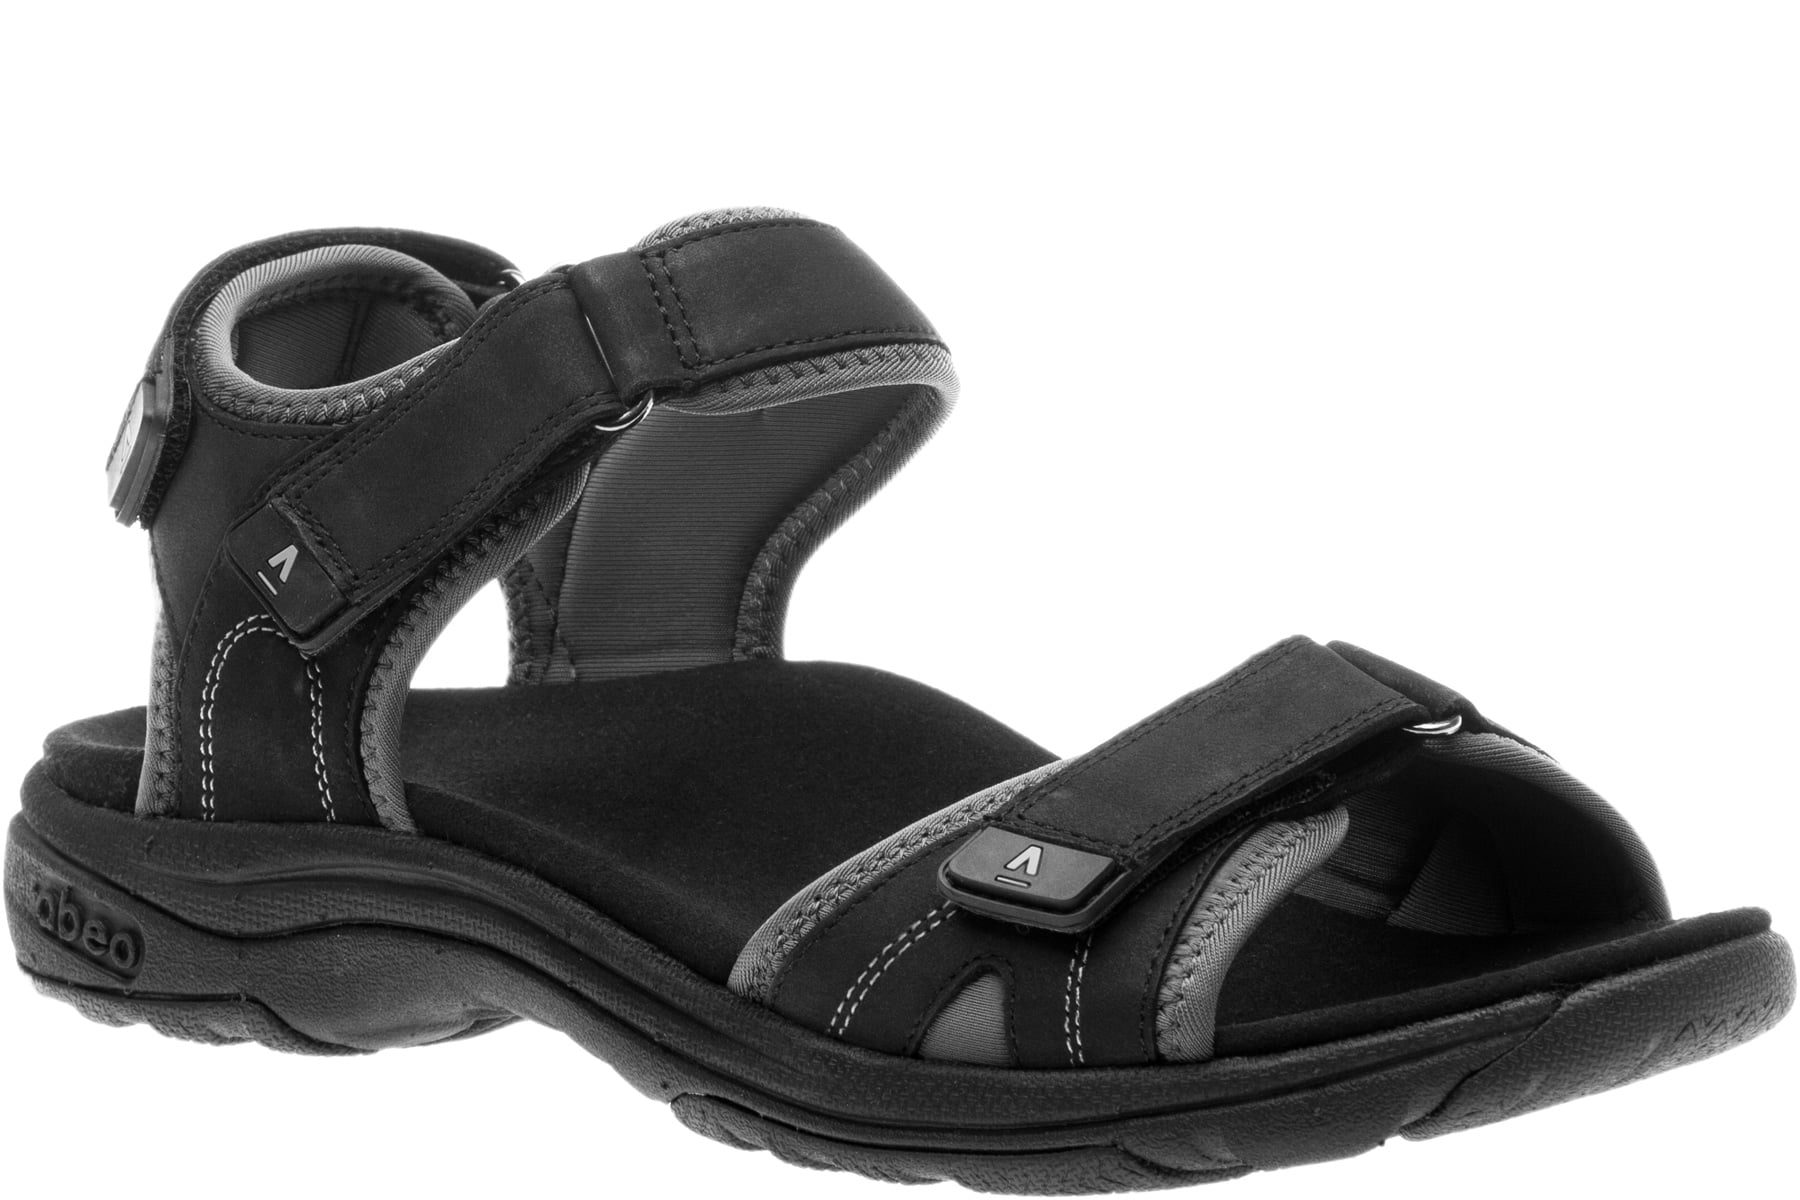 ABEO Goleta II - Low Heel Sandals in Black - Walmart.com